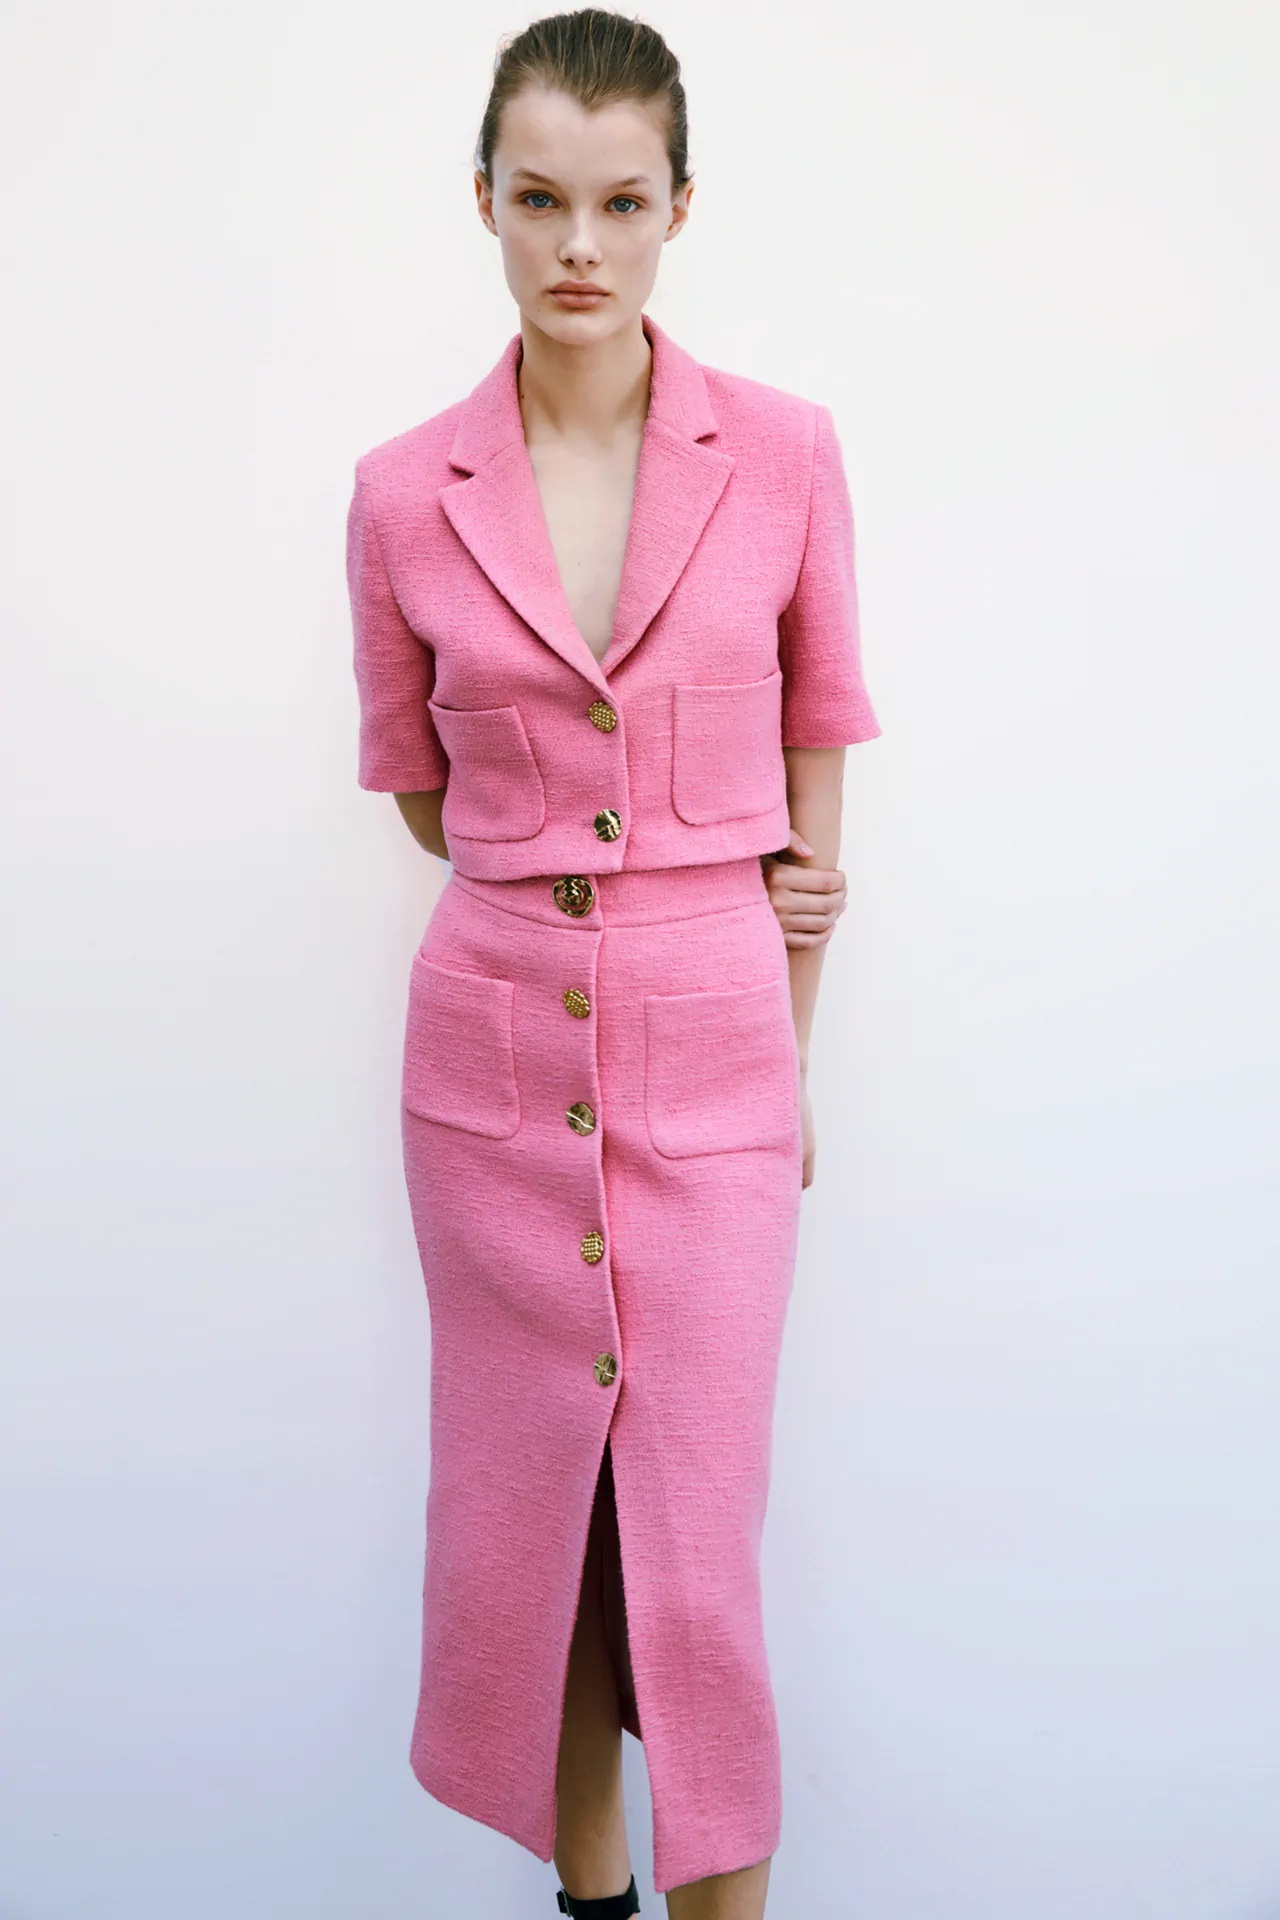 educador Panorama novedad Moda: Zara tiene una versión más femenina y barata del traje rosa de Letizia